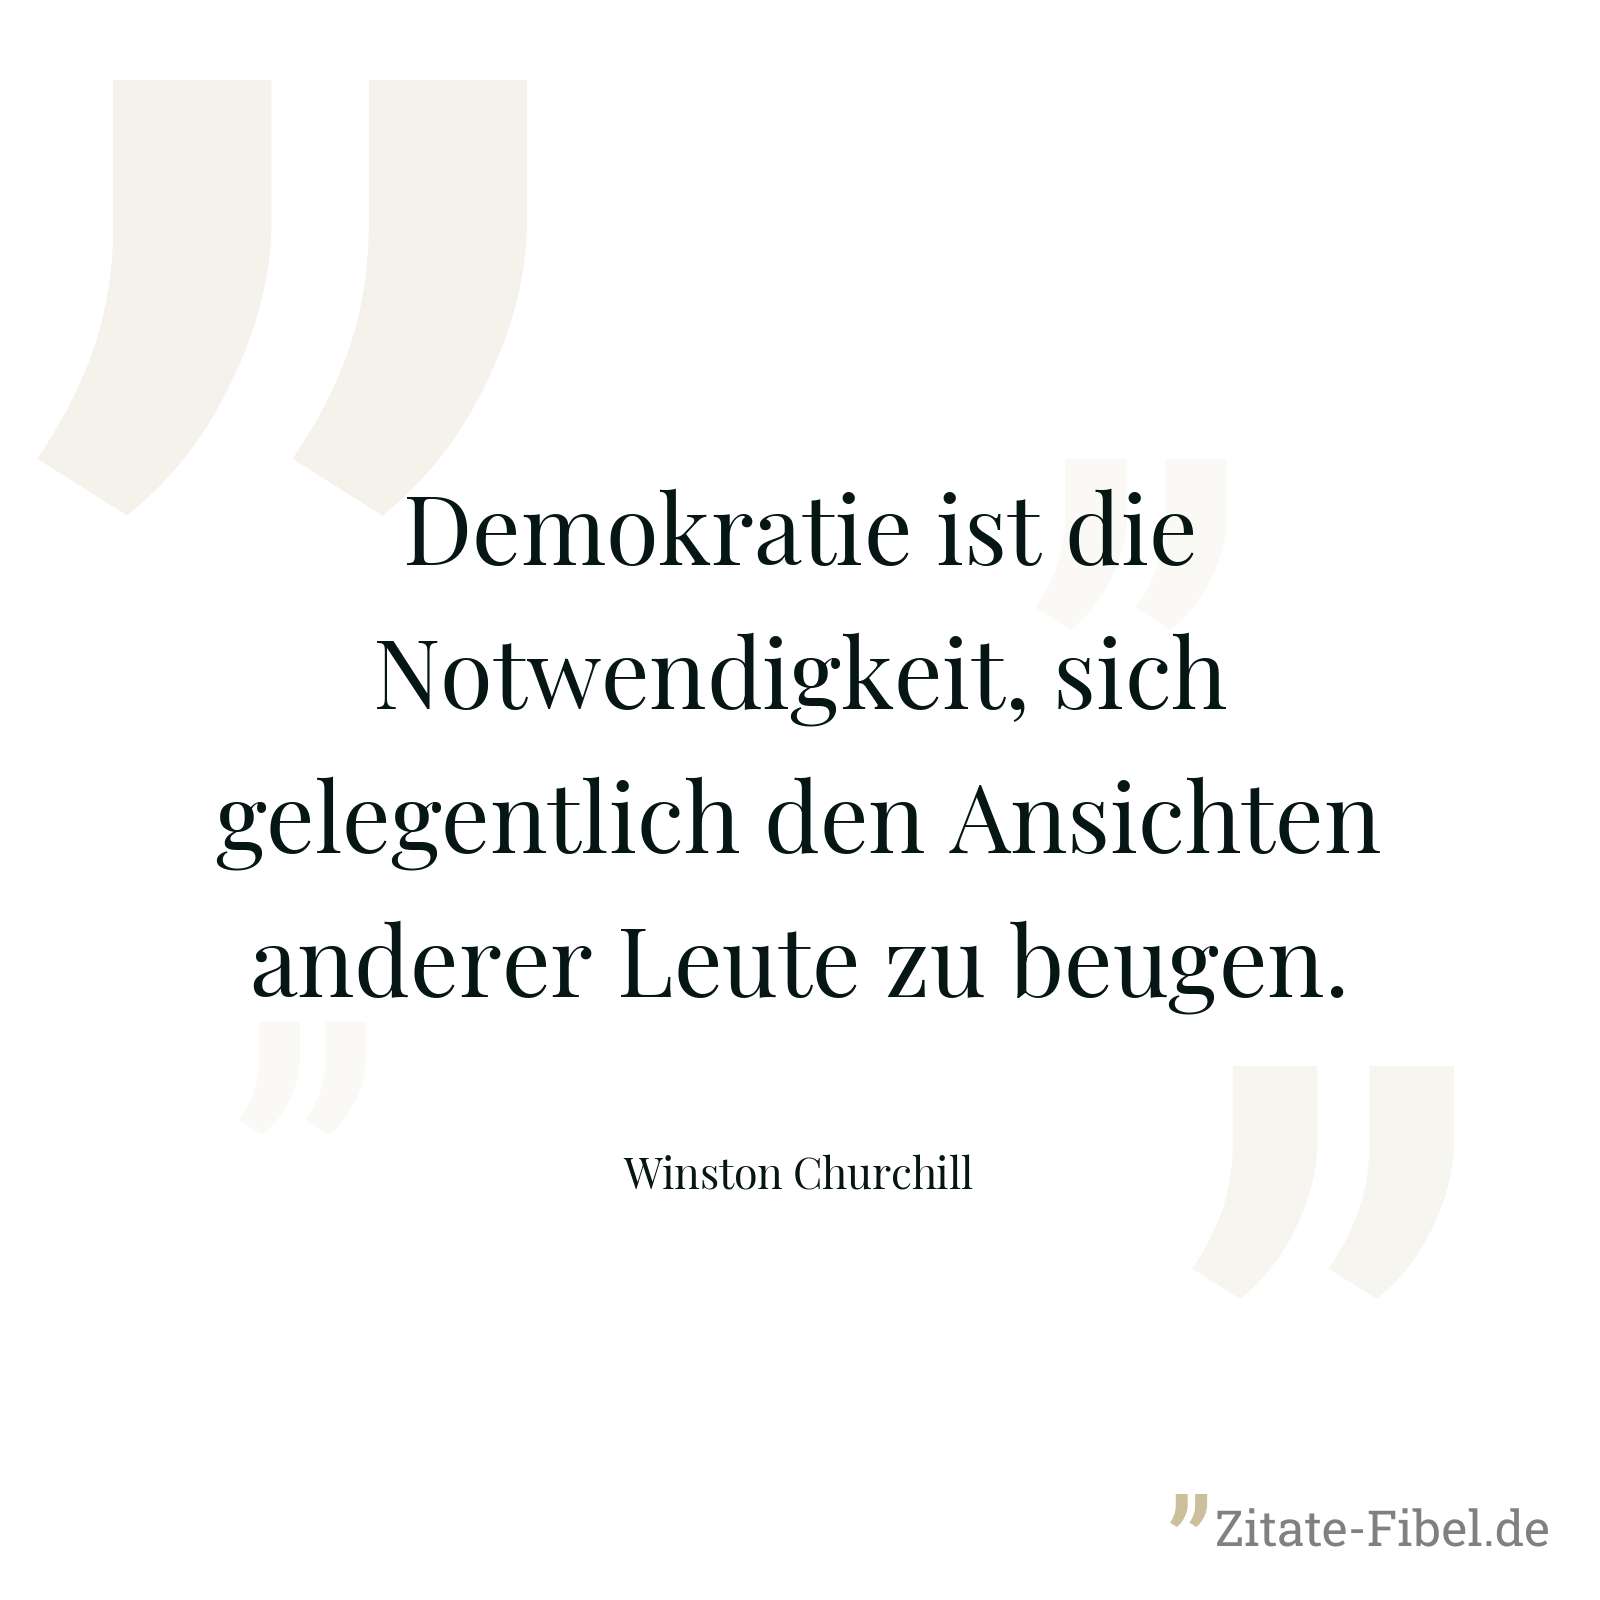 Demokratie ist die Notwendigkeit, sich gelegentlich den Ansichten anderer Leute zu beugen. - Winston Churchill